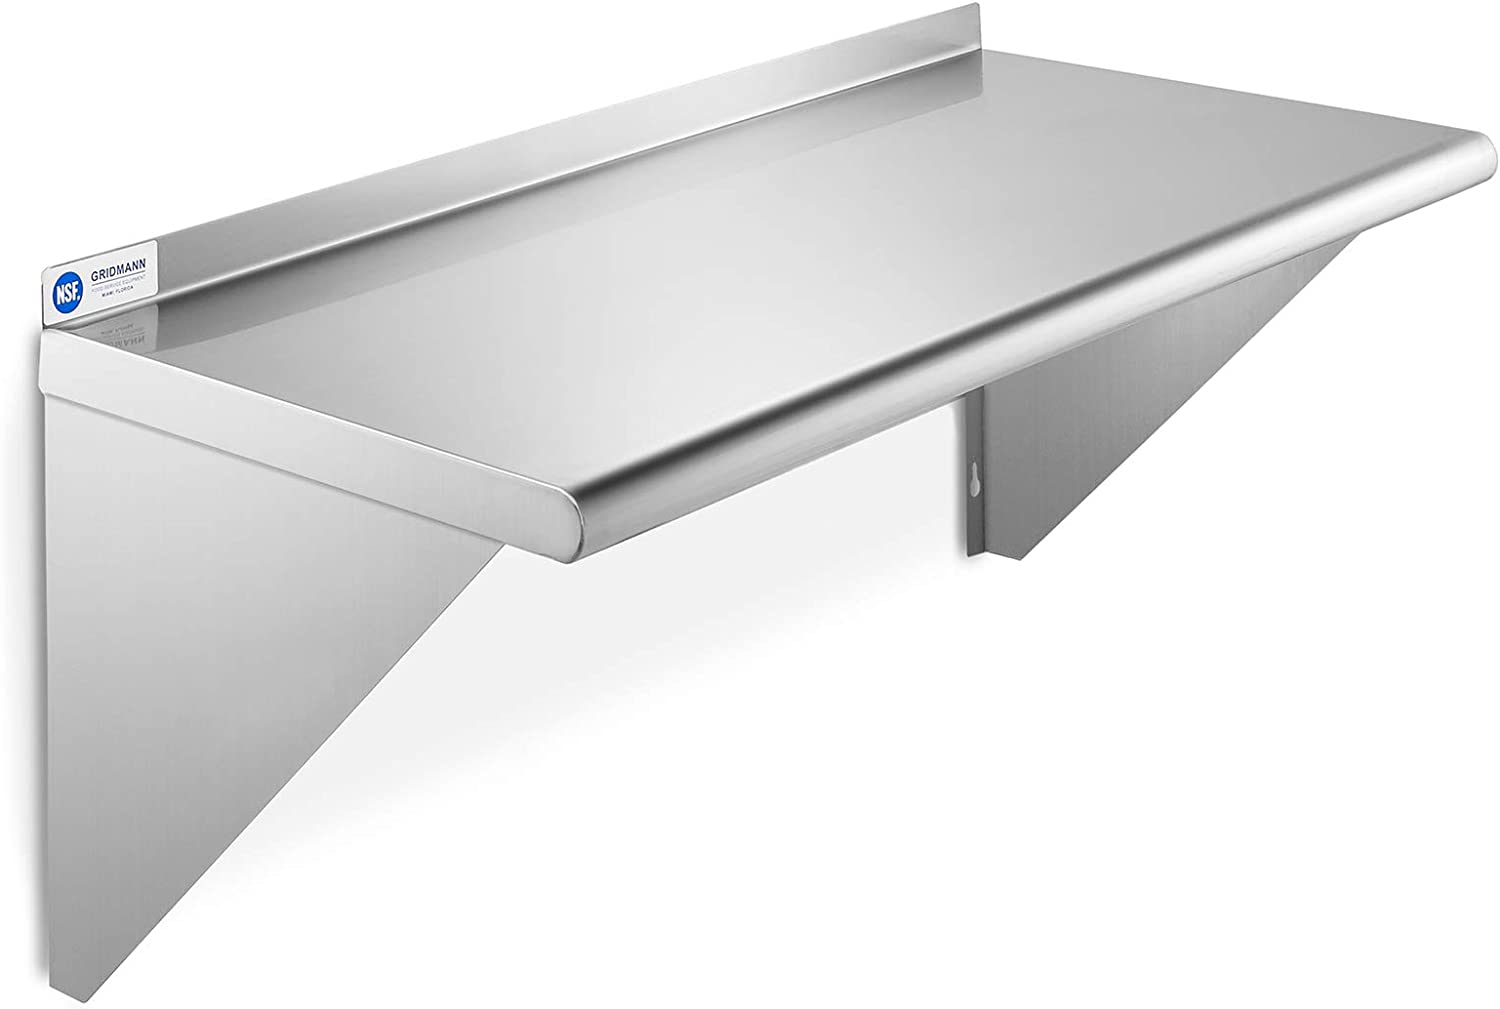 gridmann nsf stainless steel kitchen wall mount shelf